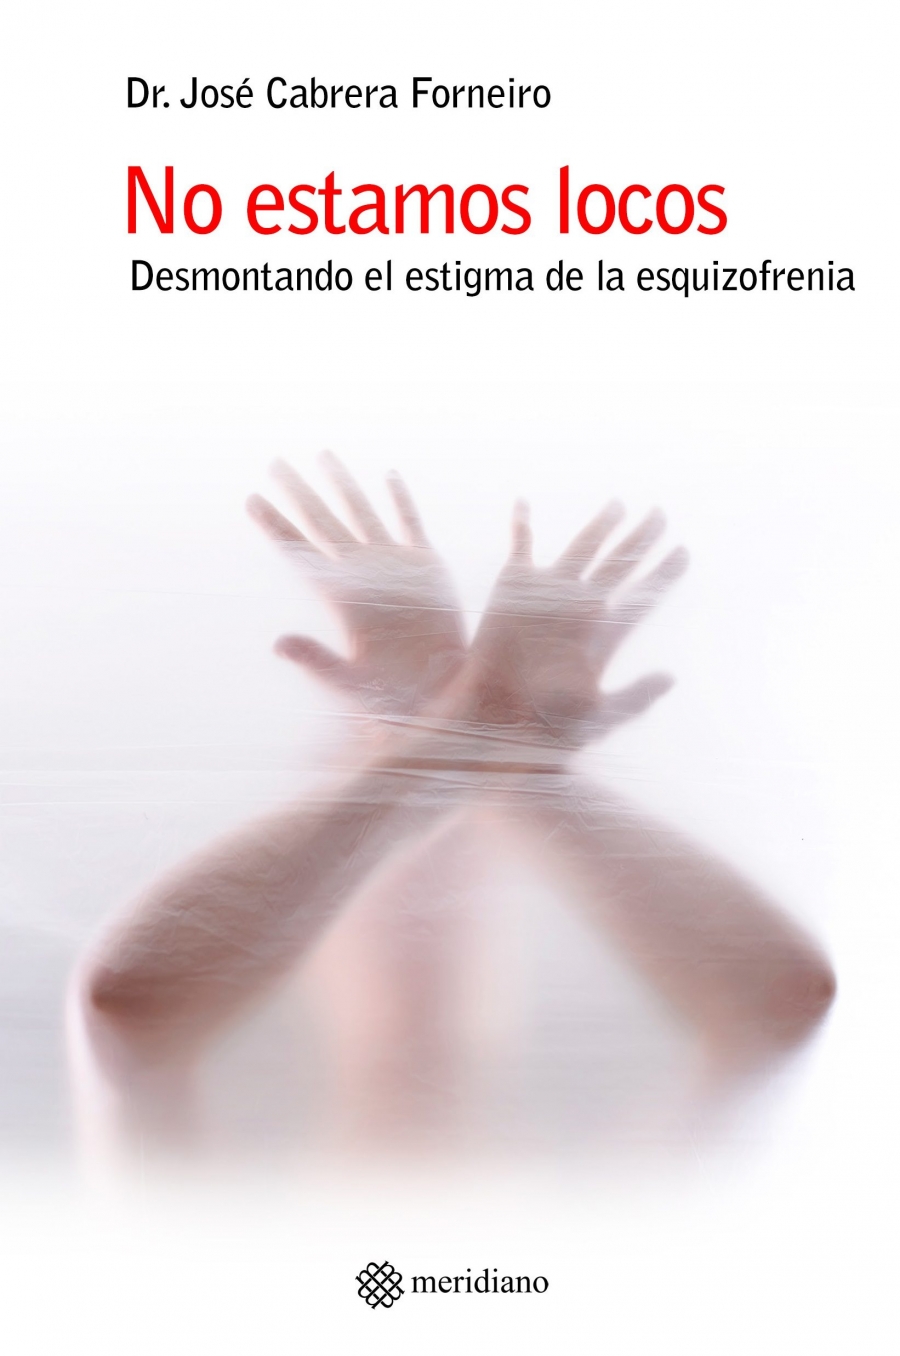 José Cabrera presenta en la Fundación Tutelar de San Juan de Dios su último libro sobre esquizofrenia